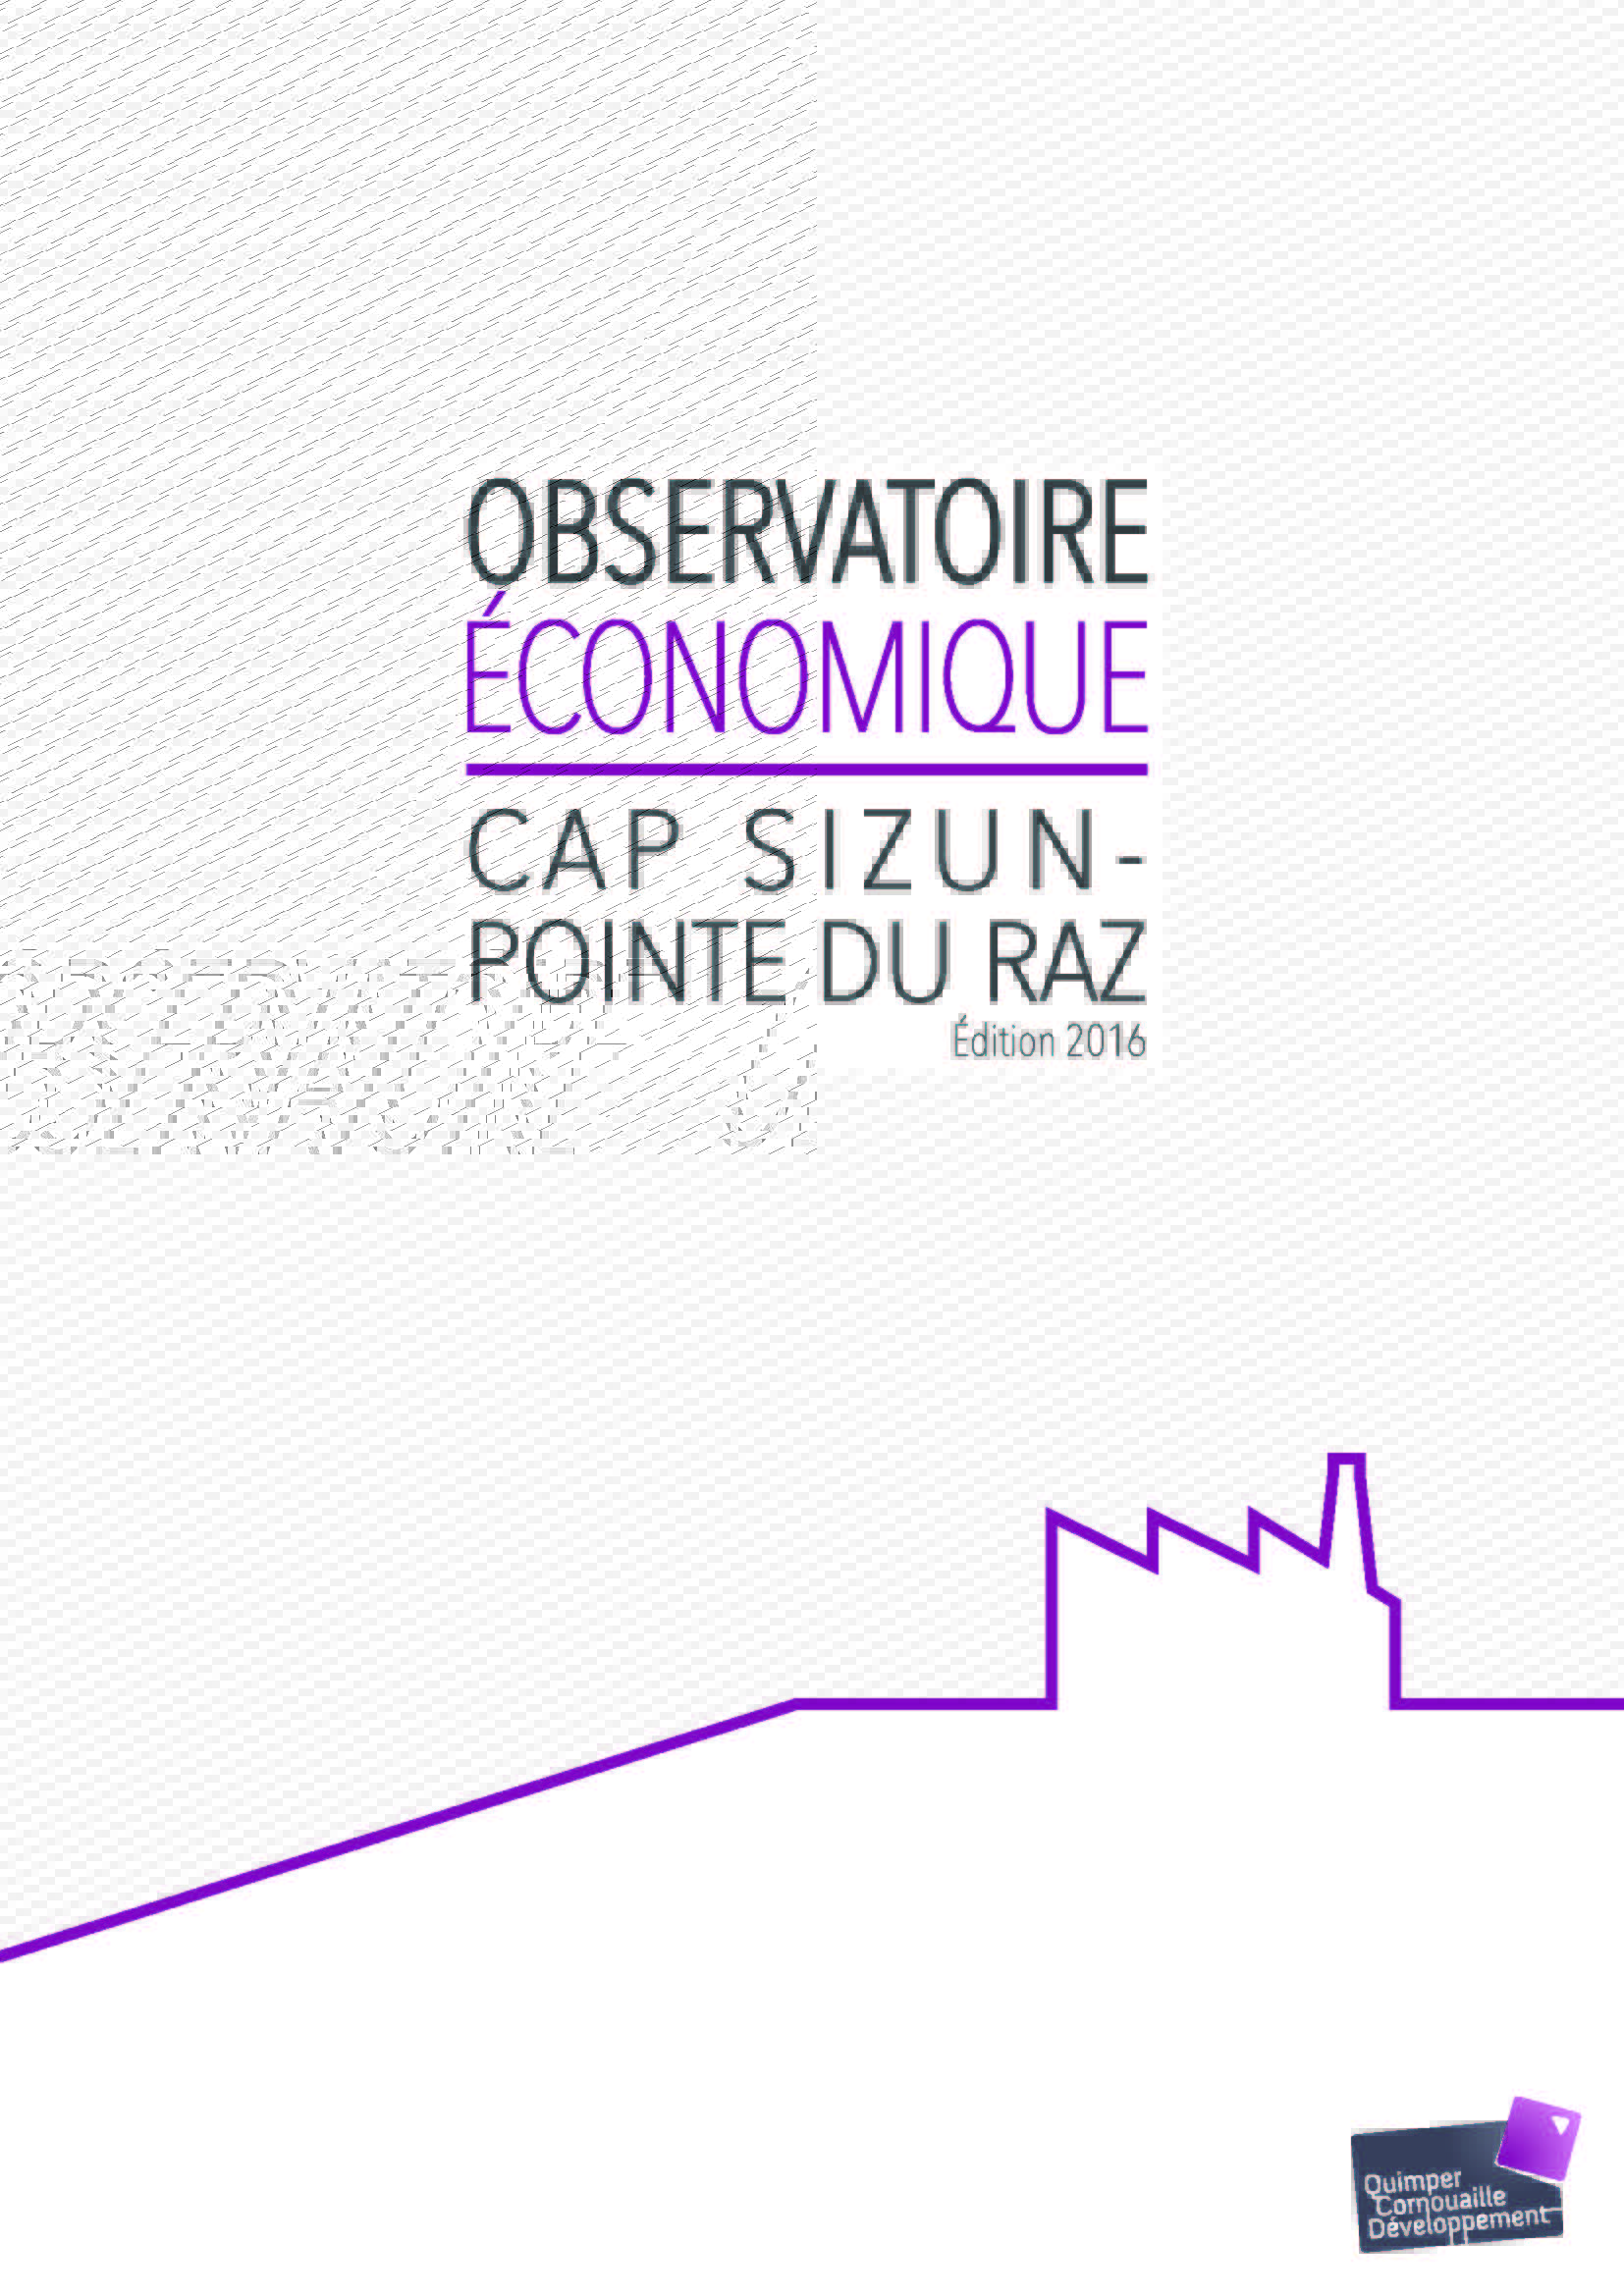 Observatoire Economique Cap Sizun - Pointe du Raz. Edition 2016 (06/2017)